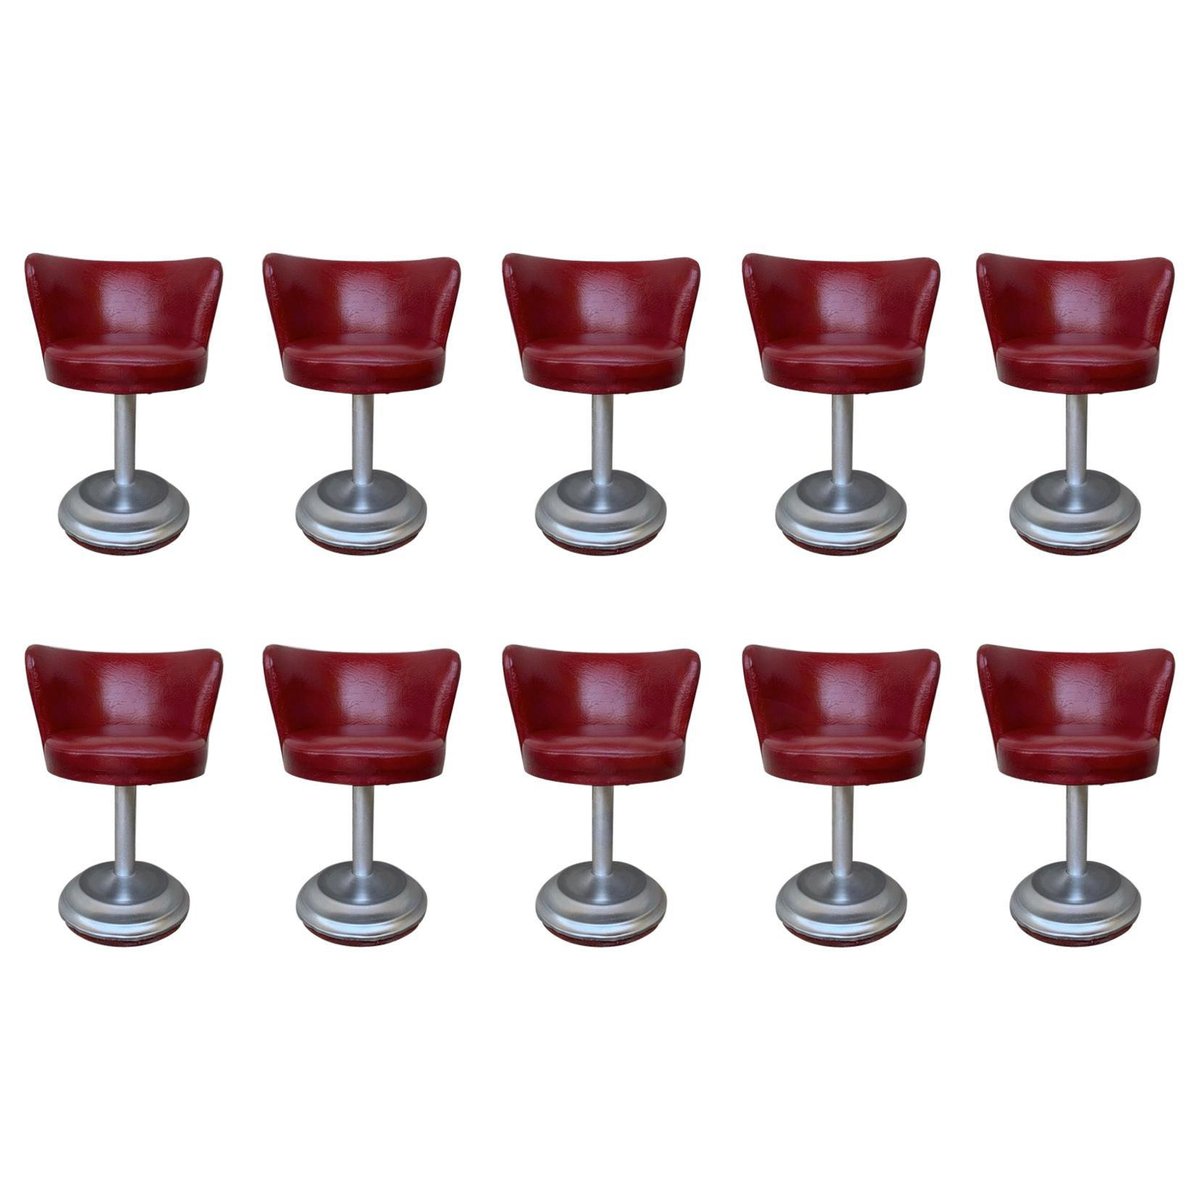 large red leatherette bar stools set of 10 PSK-1002565